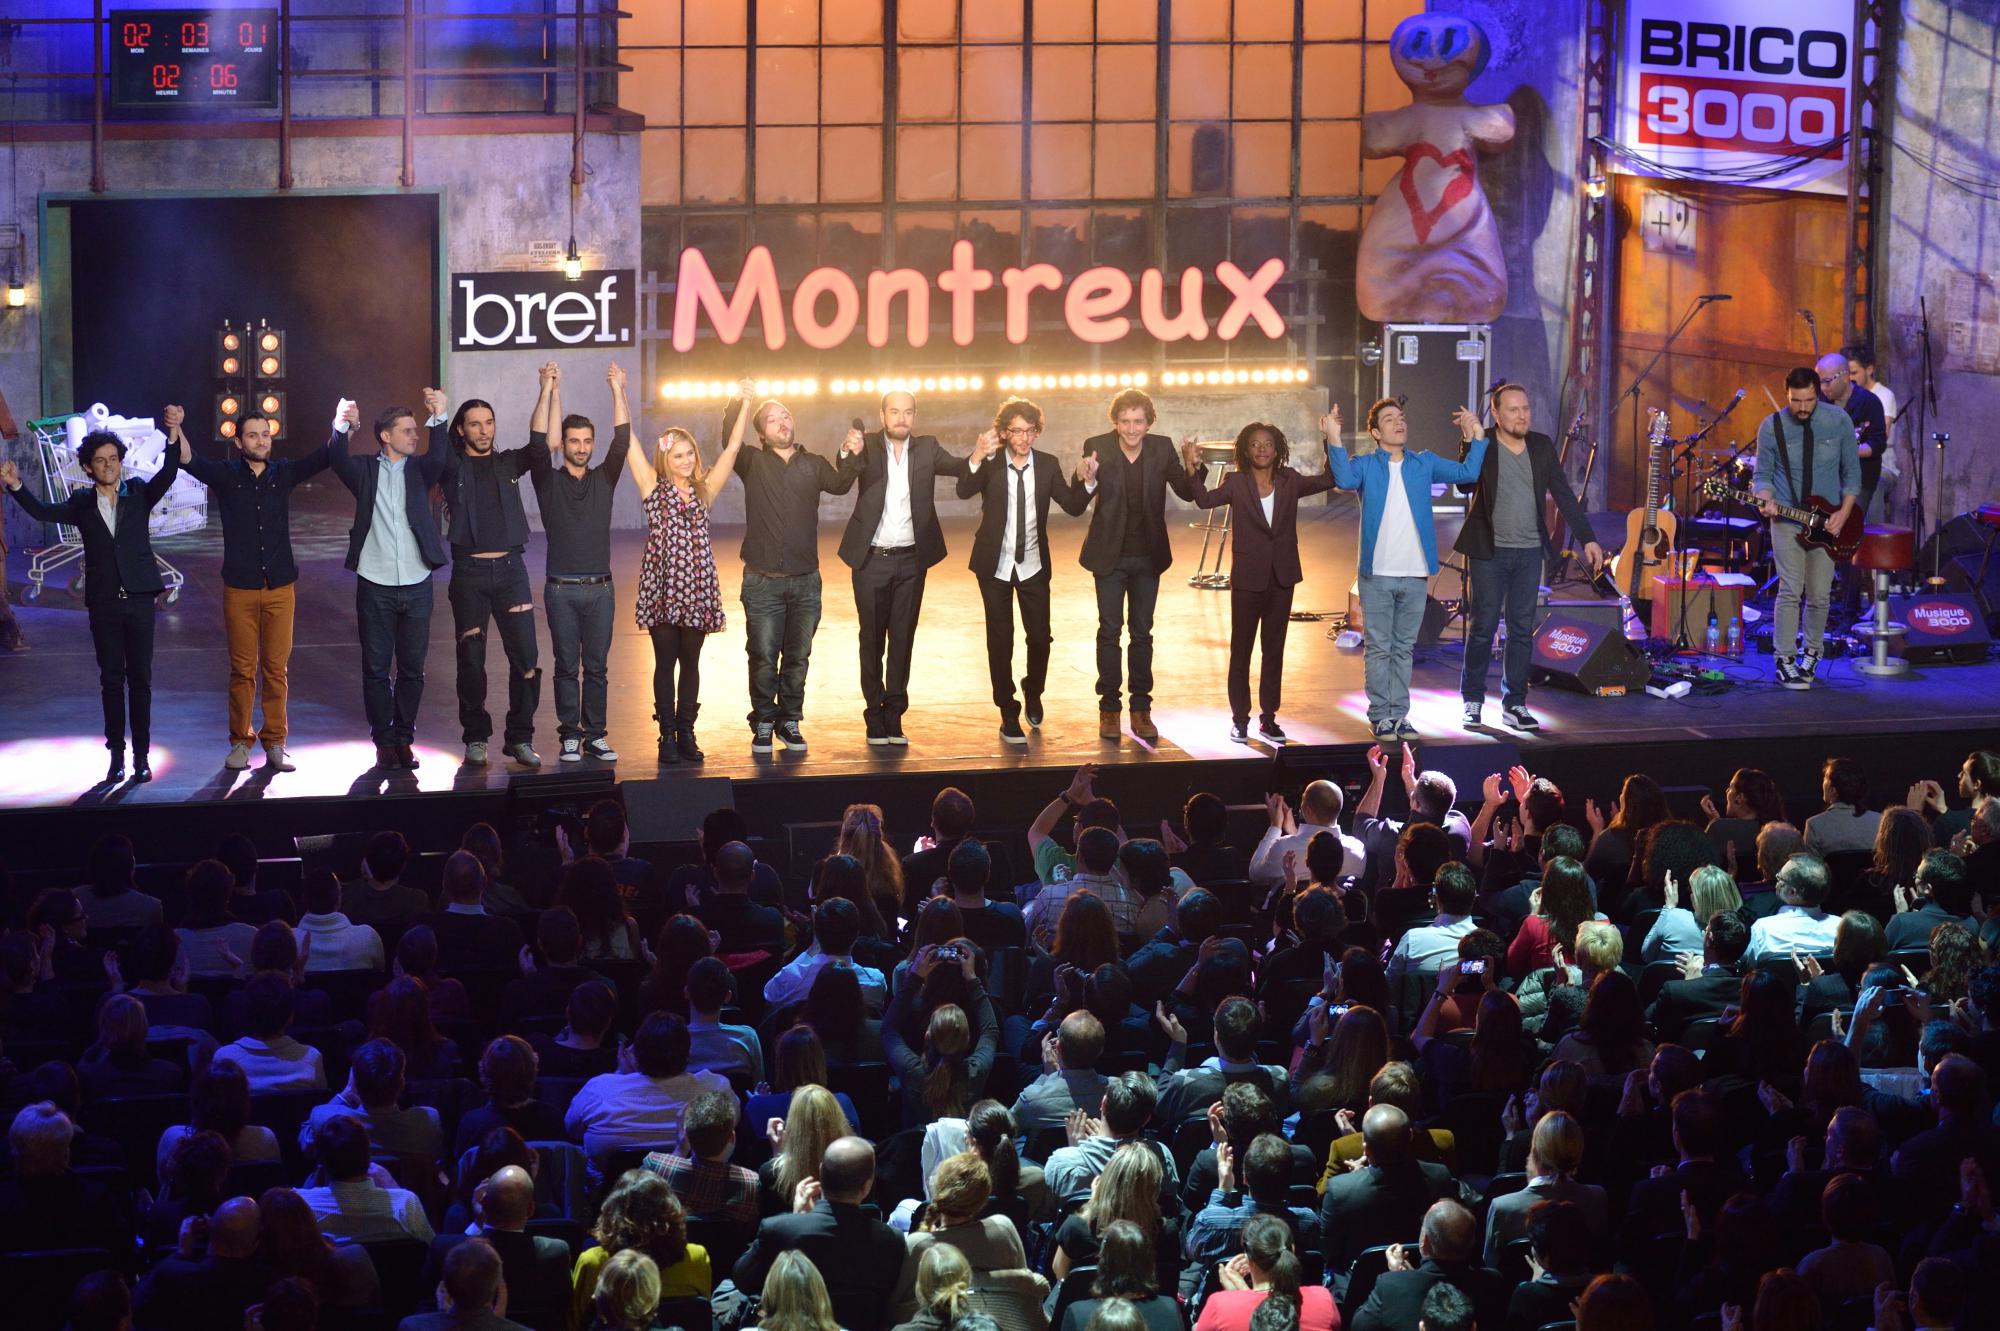 مهرجان مونترو للكوميديا 2019   montreux comedy 2019